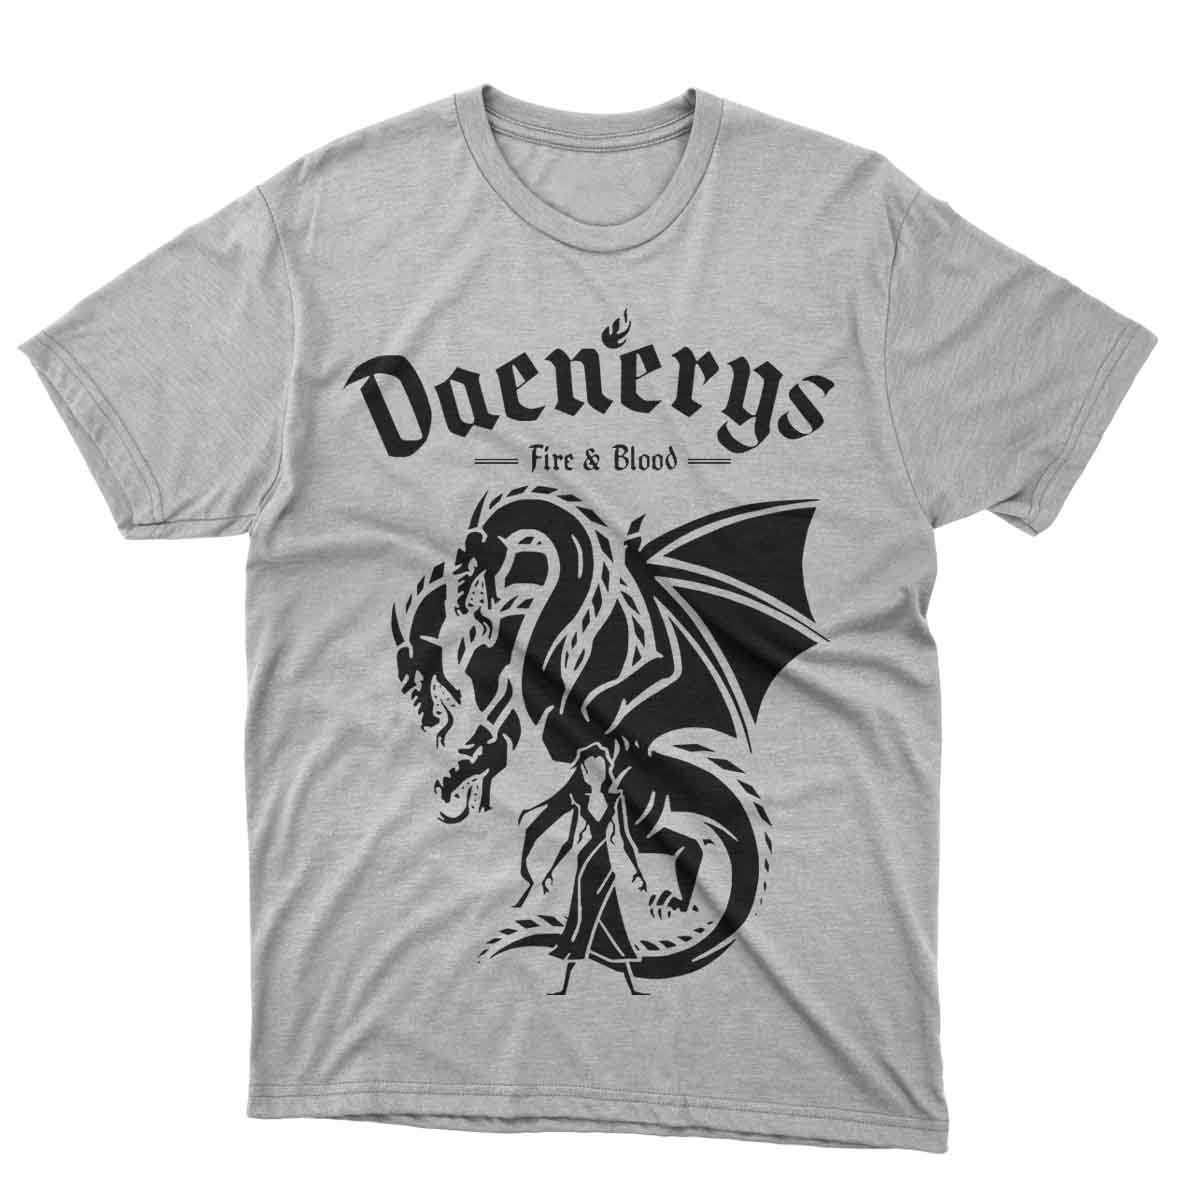 Daenerys Tshirt Black Design